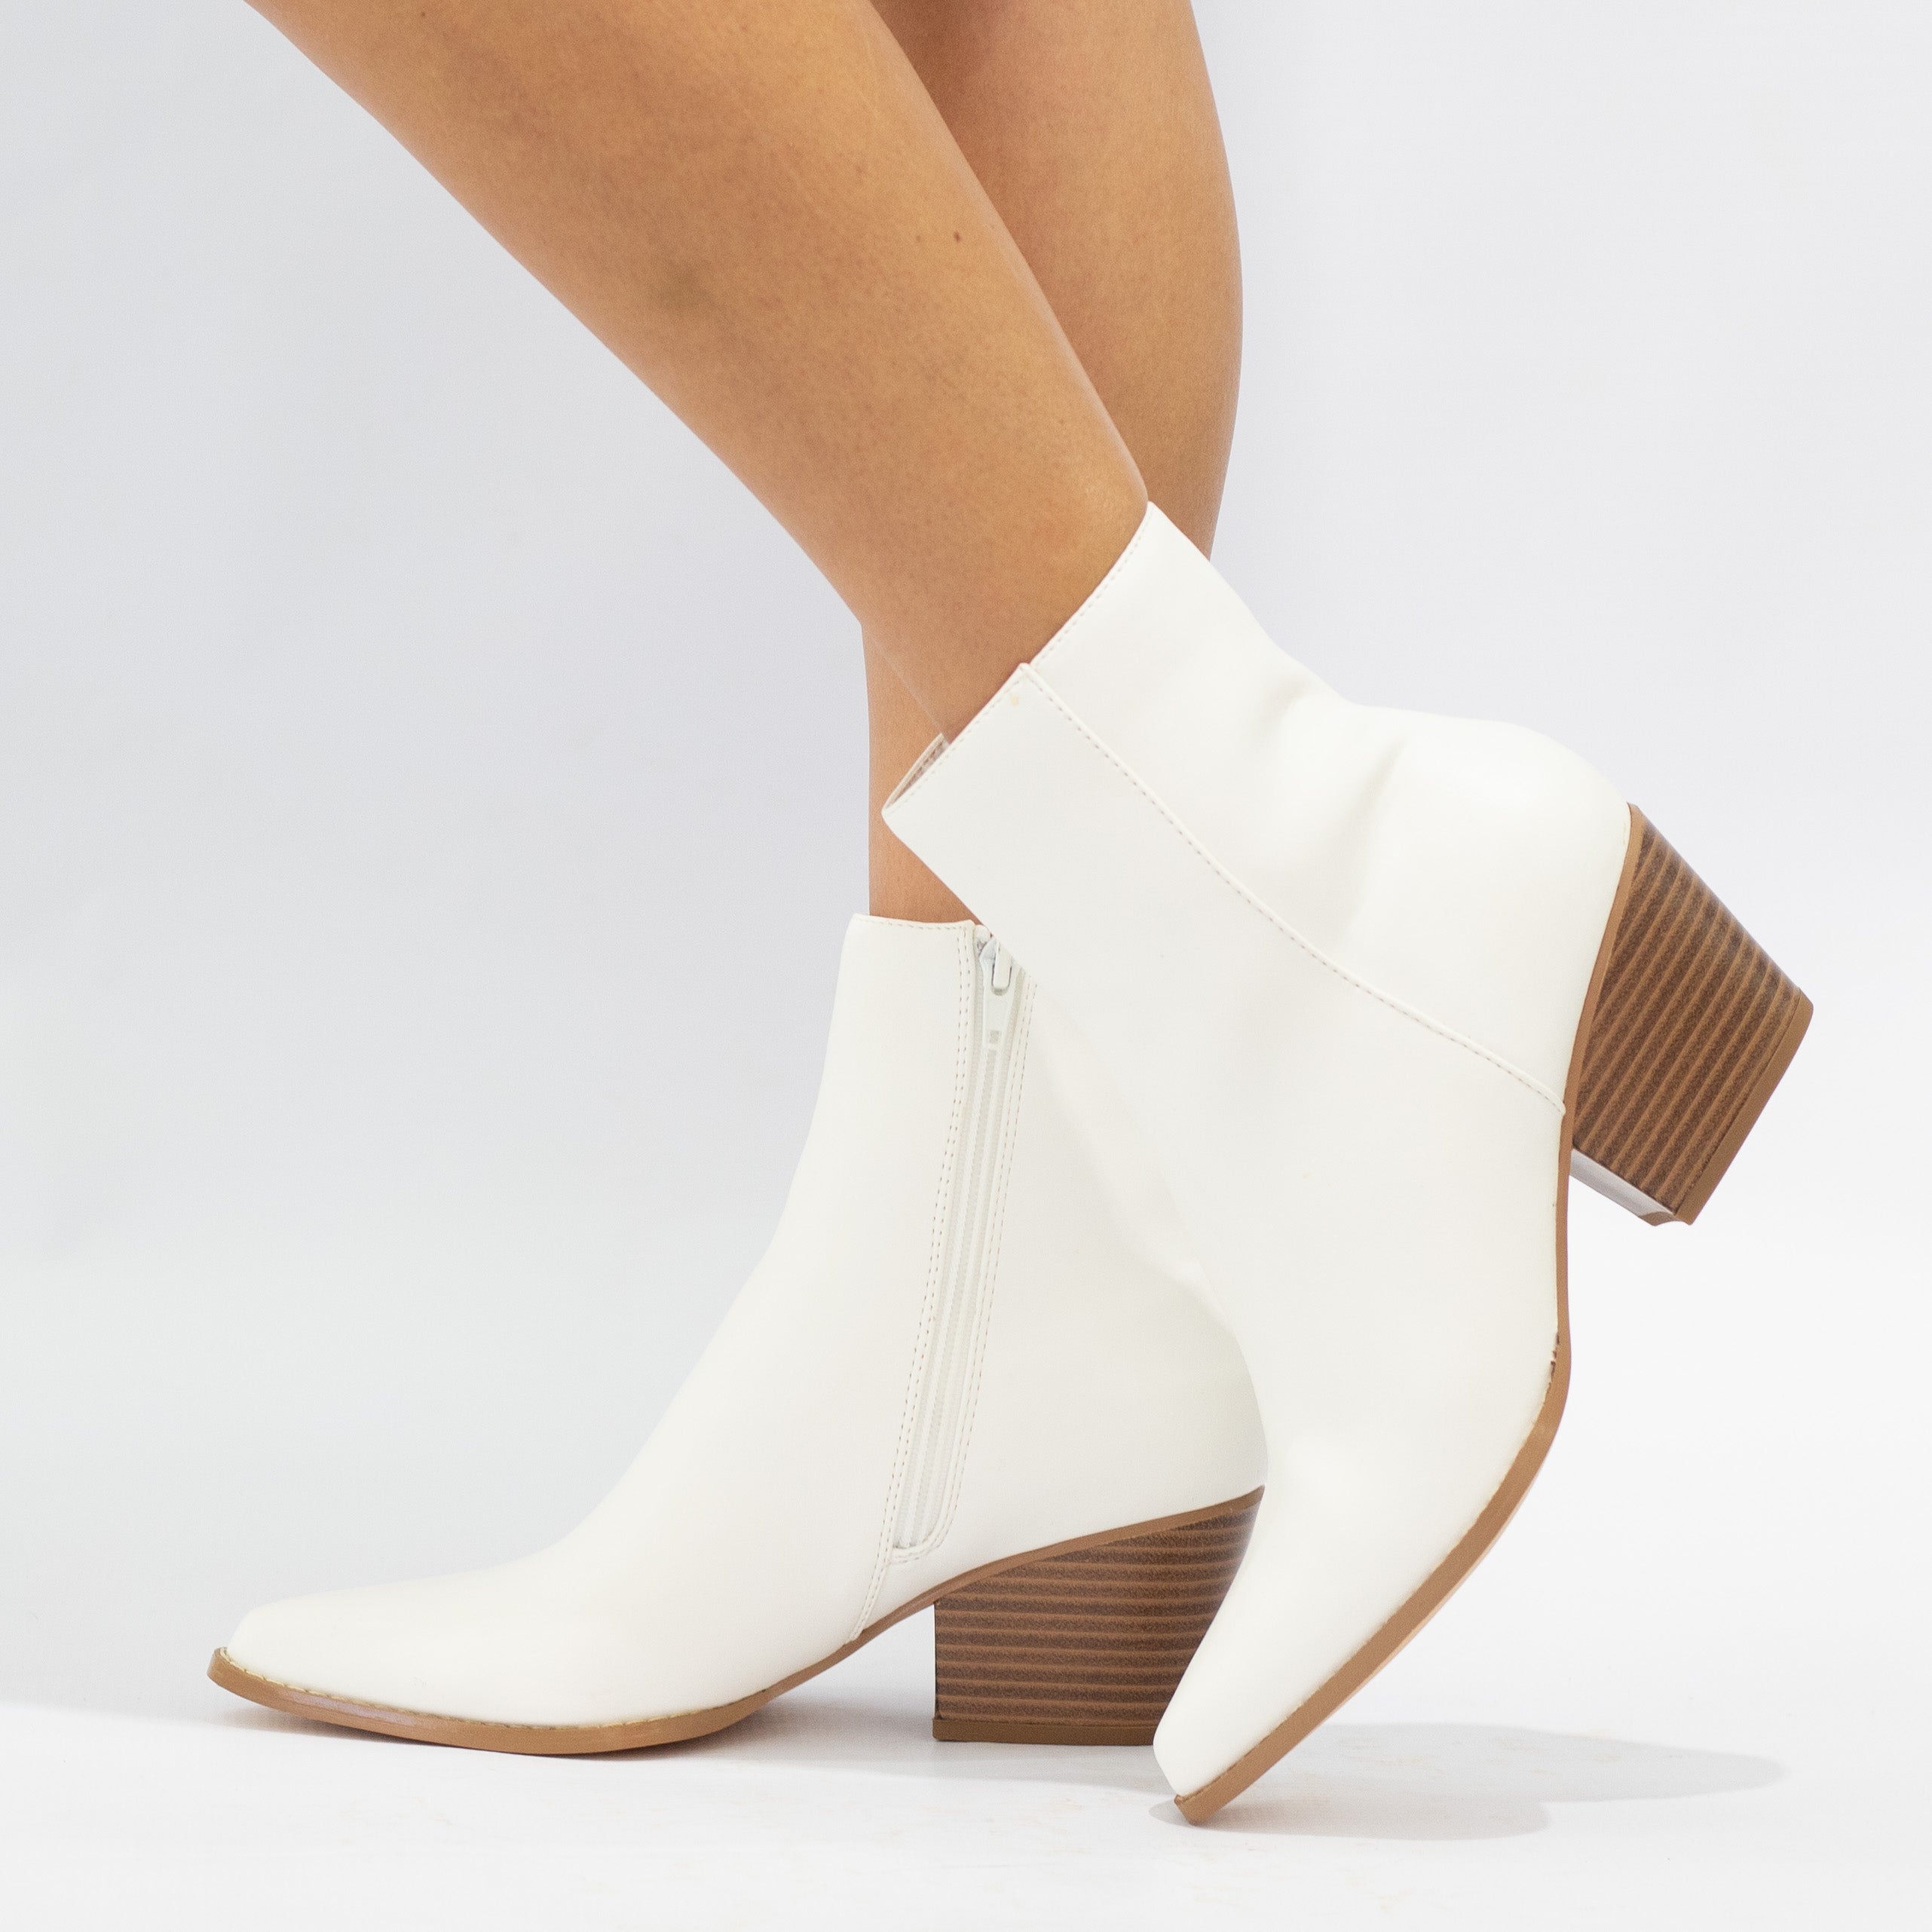 White 6cm block heel LA08-18 PU ankle boot noelle